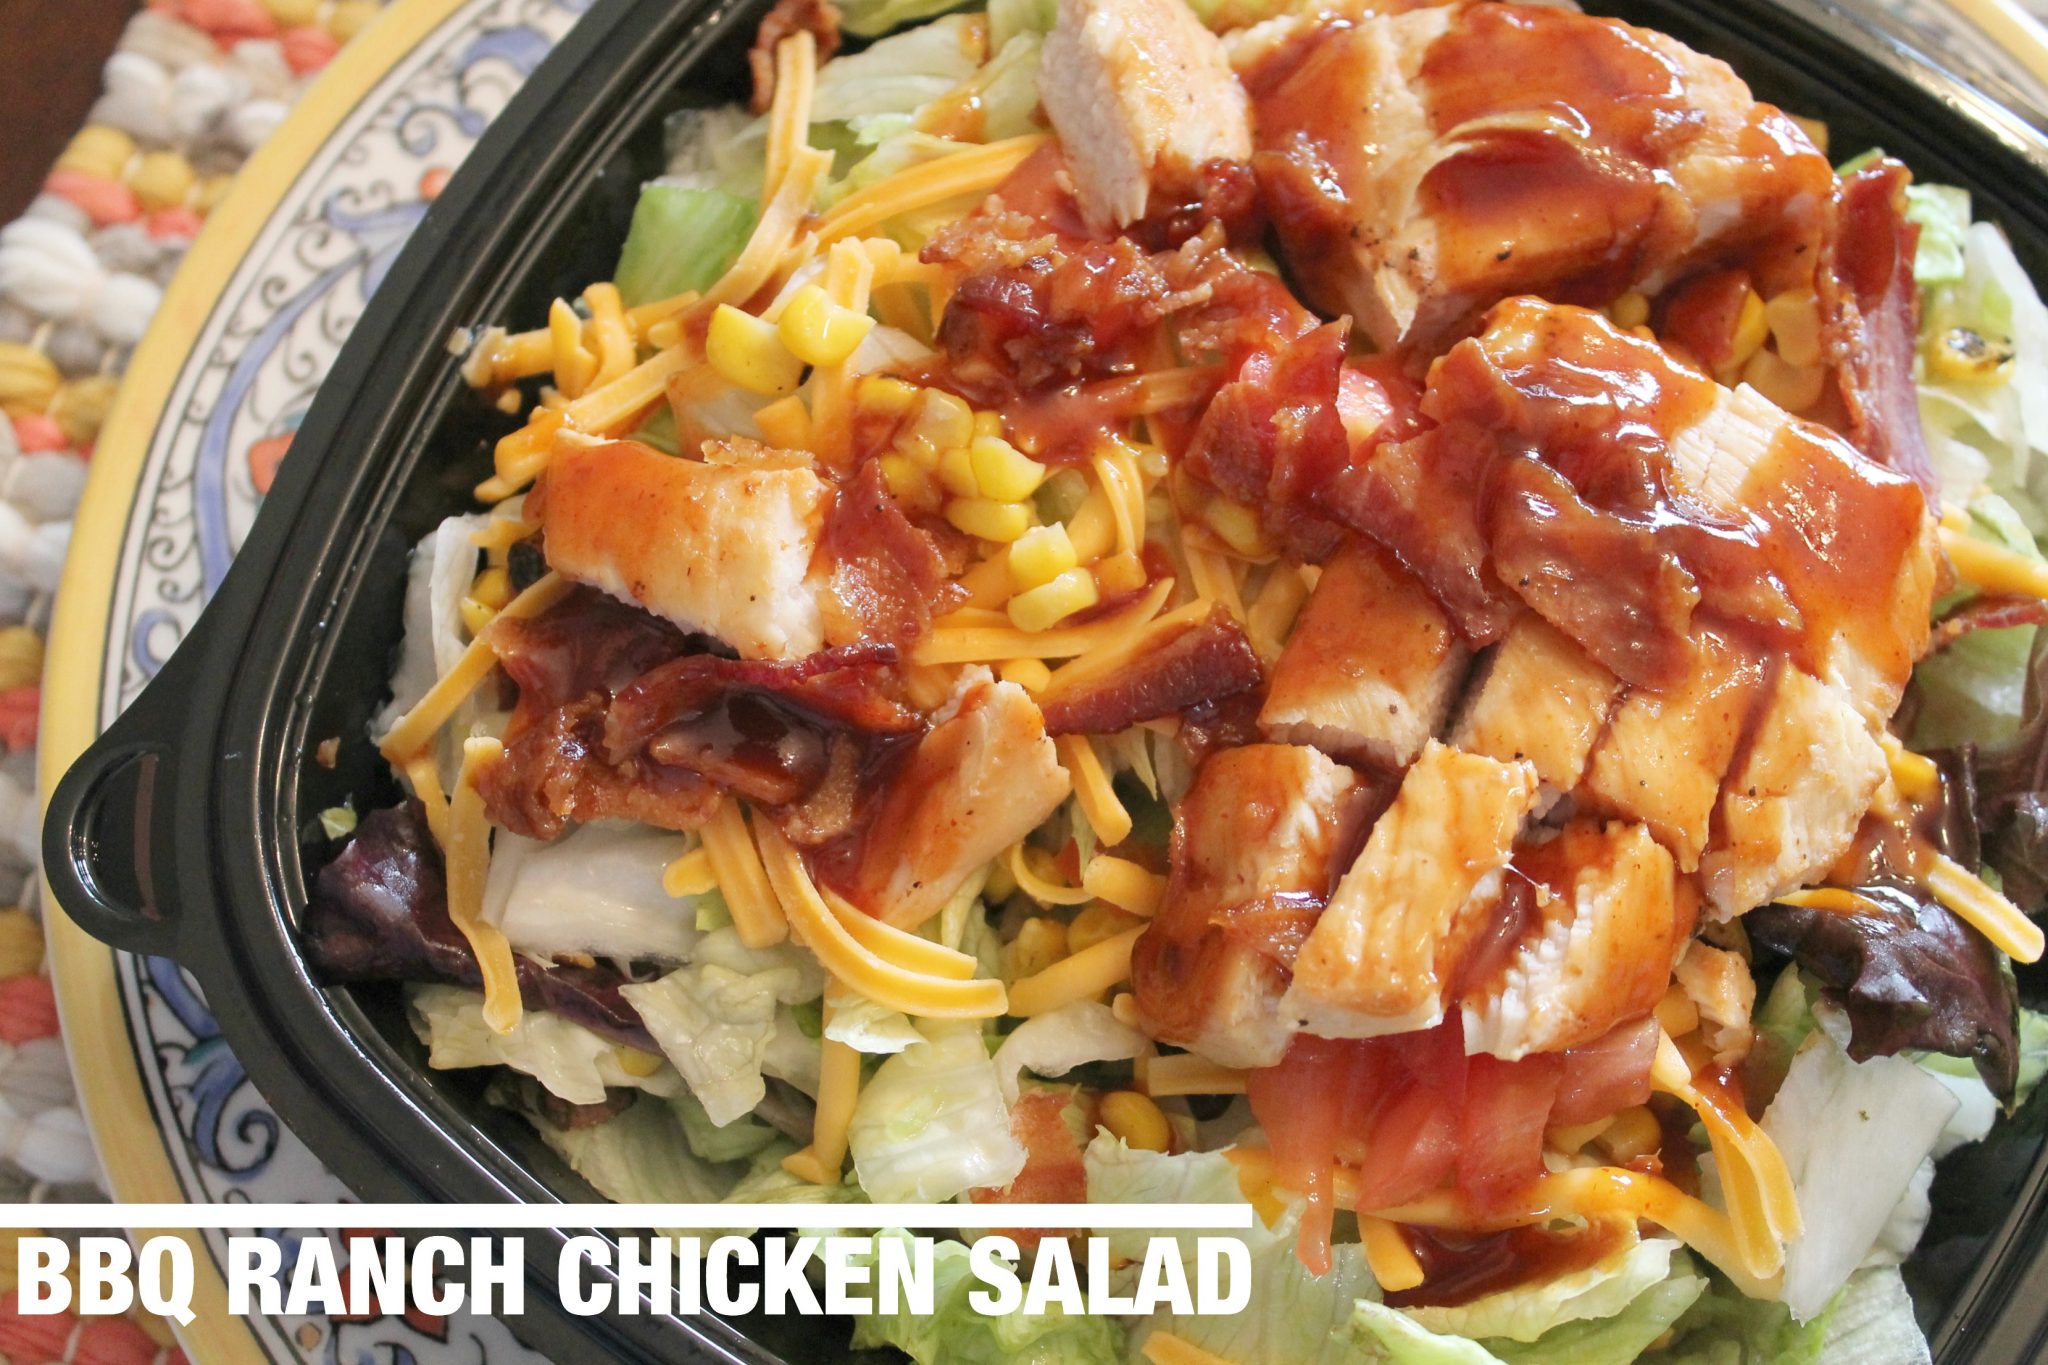 bbq chicken salad